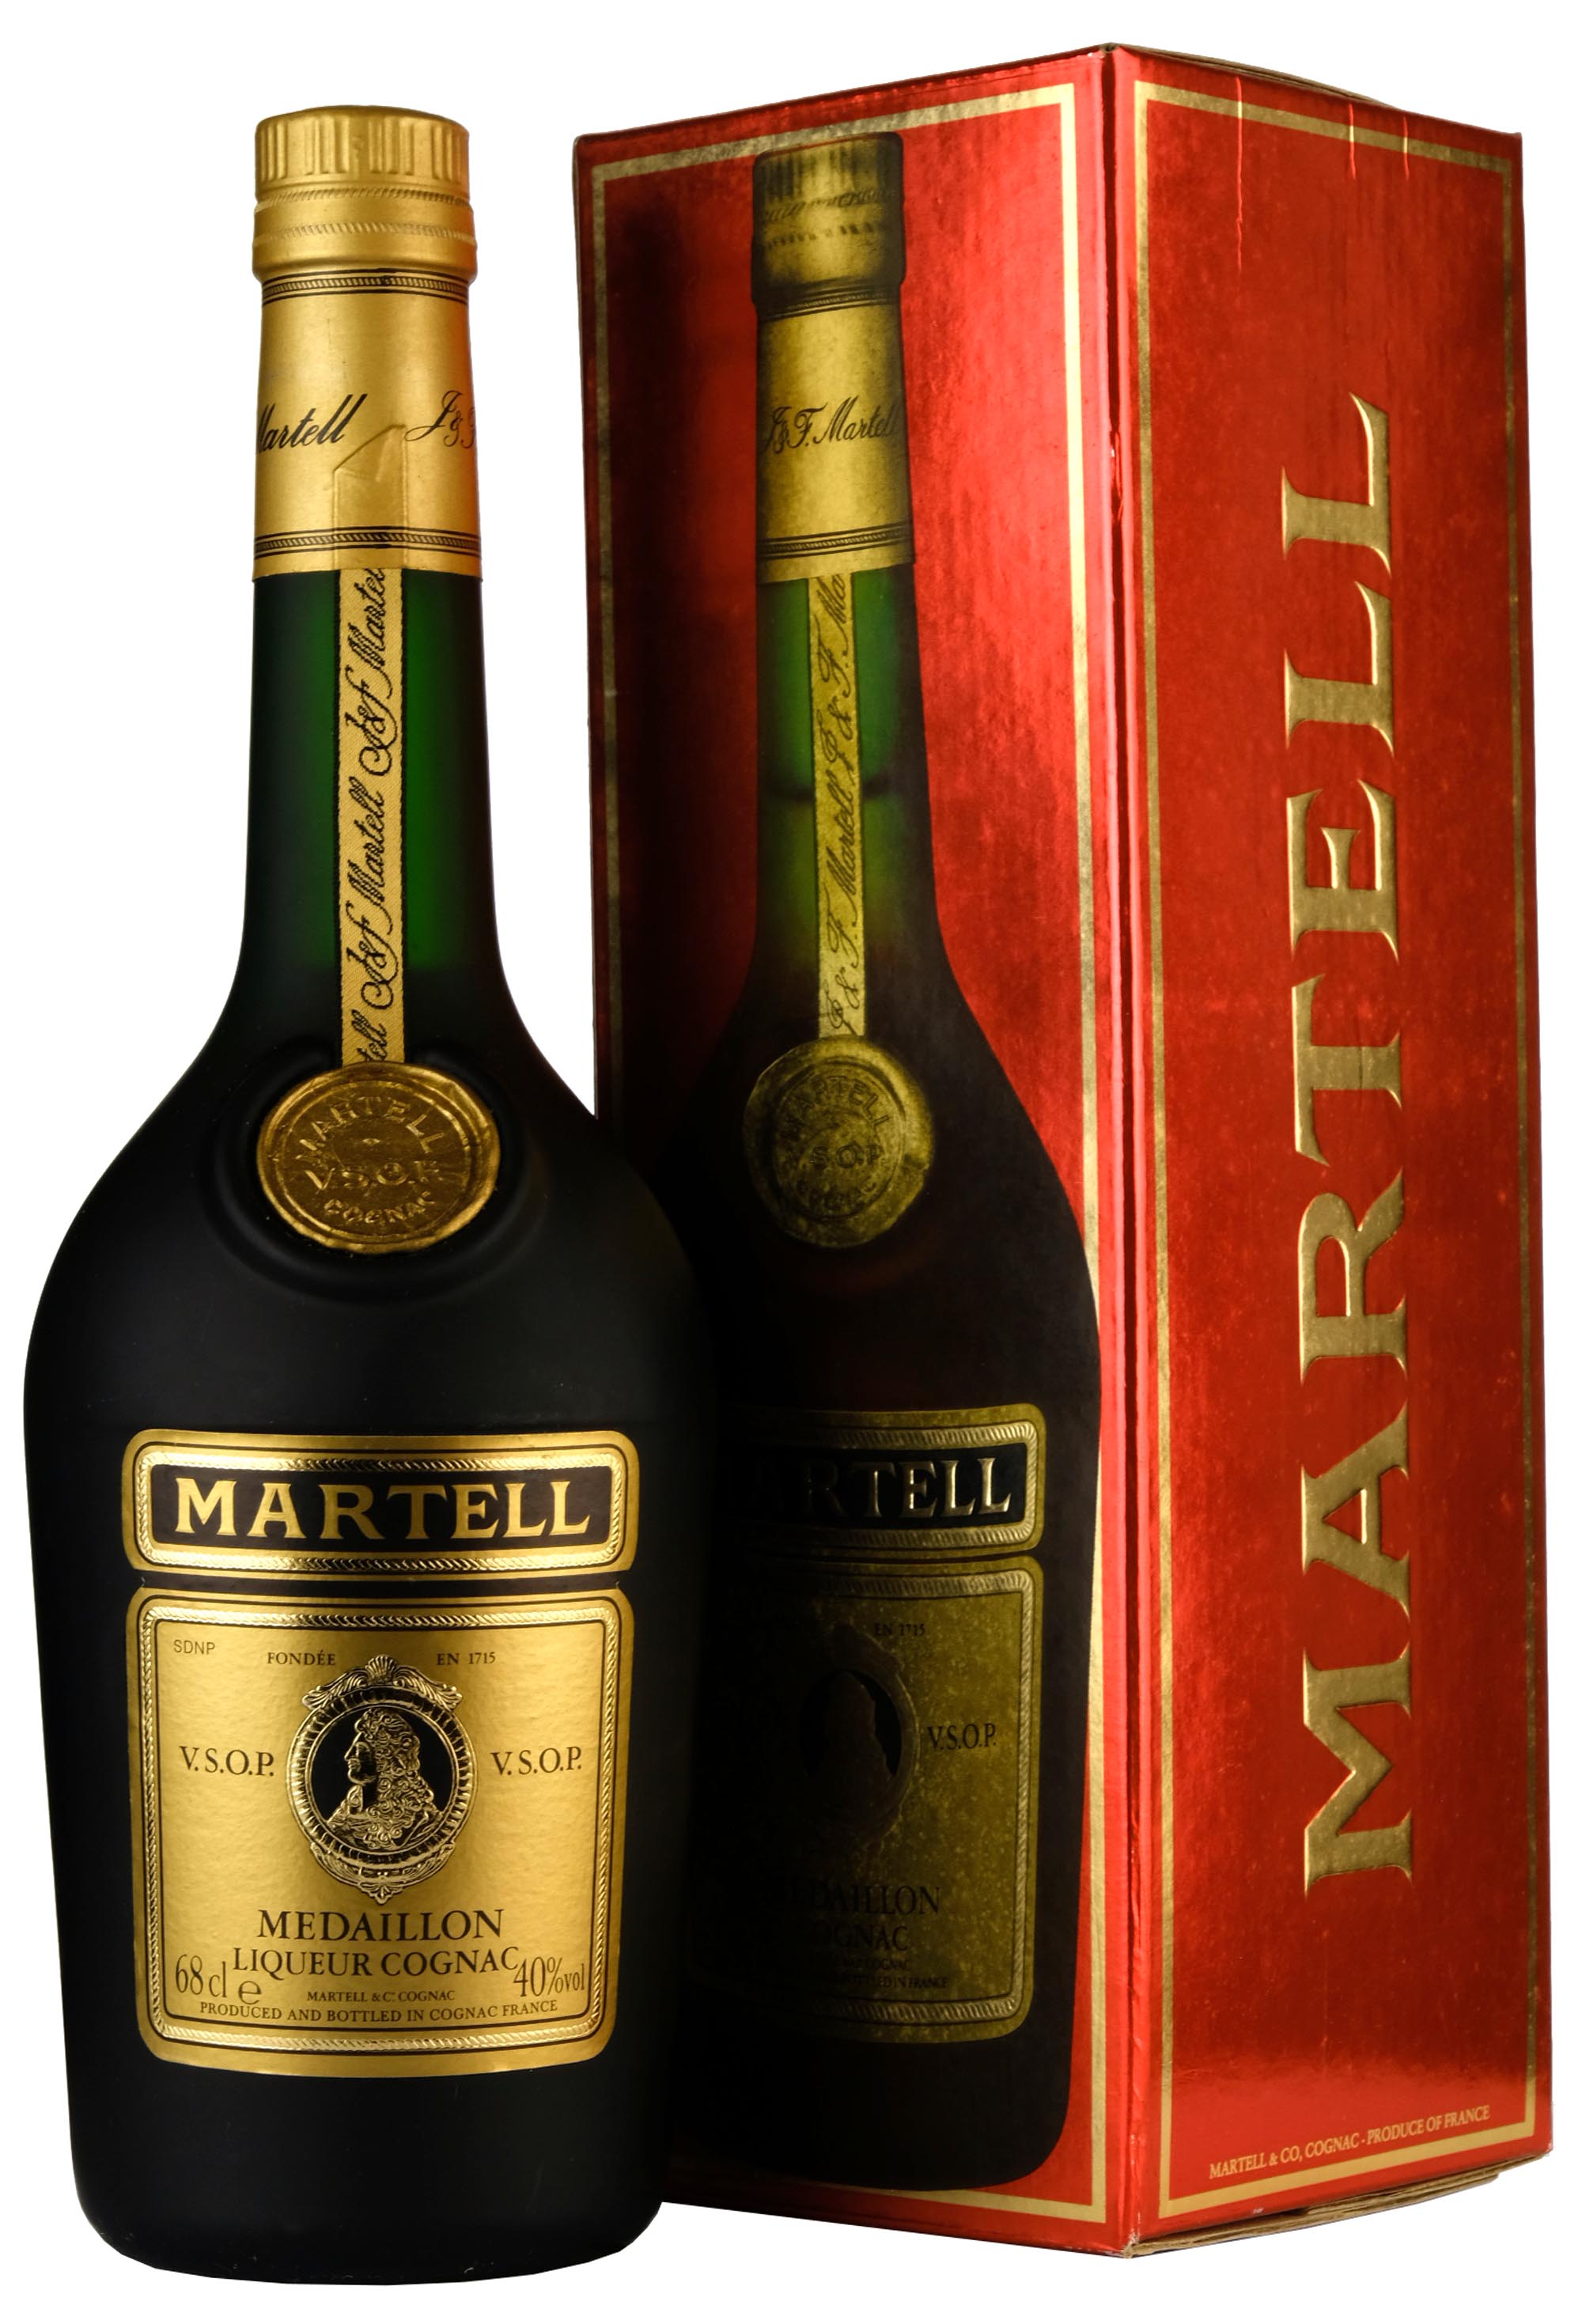 Martell Medaillon VSOP Liqueur Cognac | 1980s Bottle